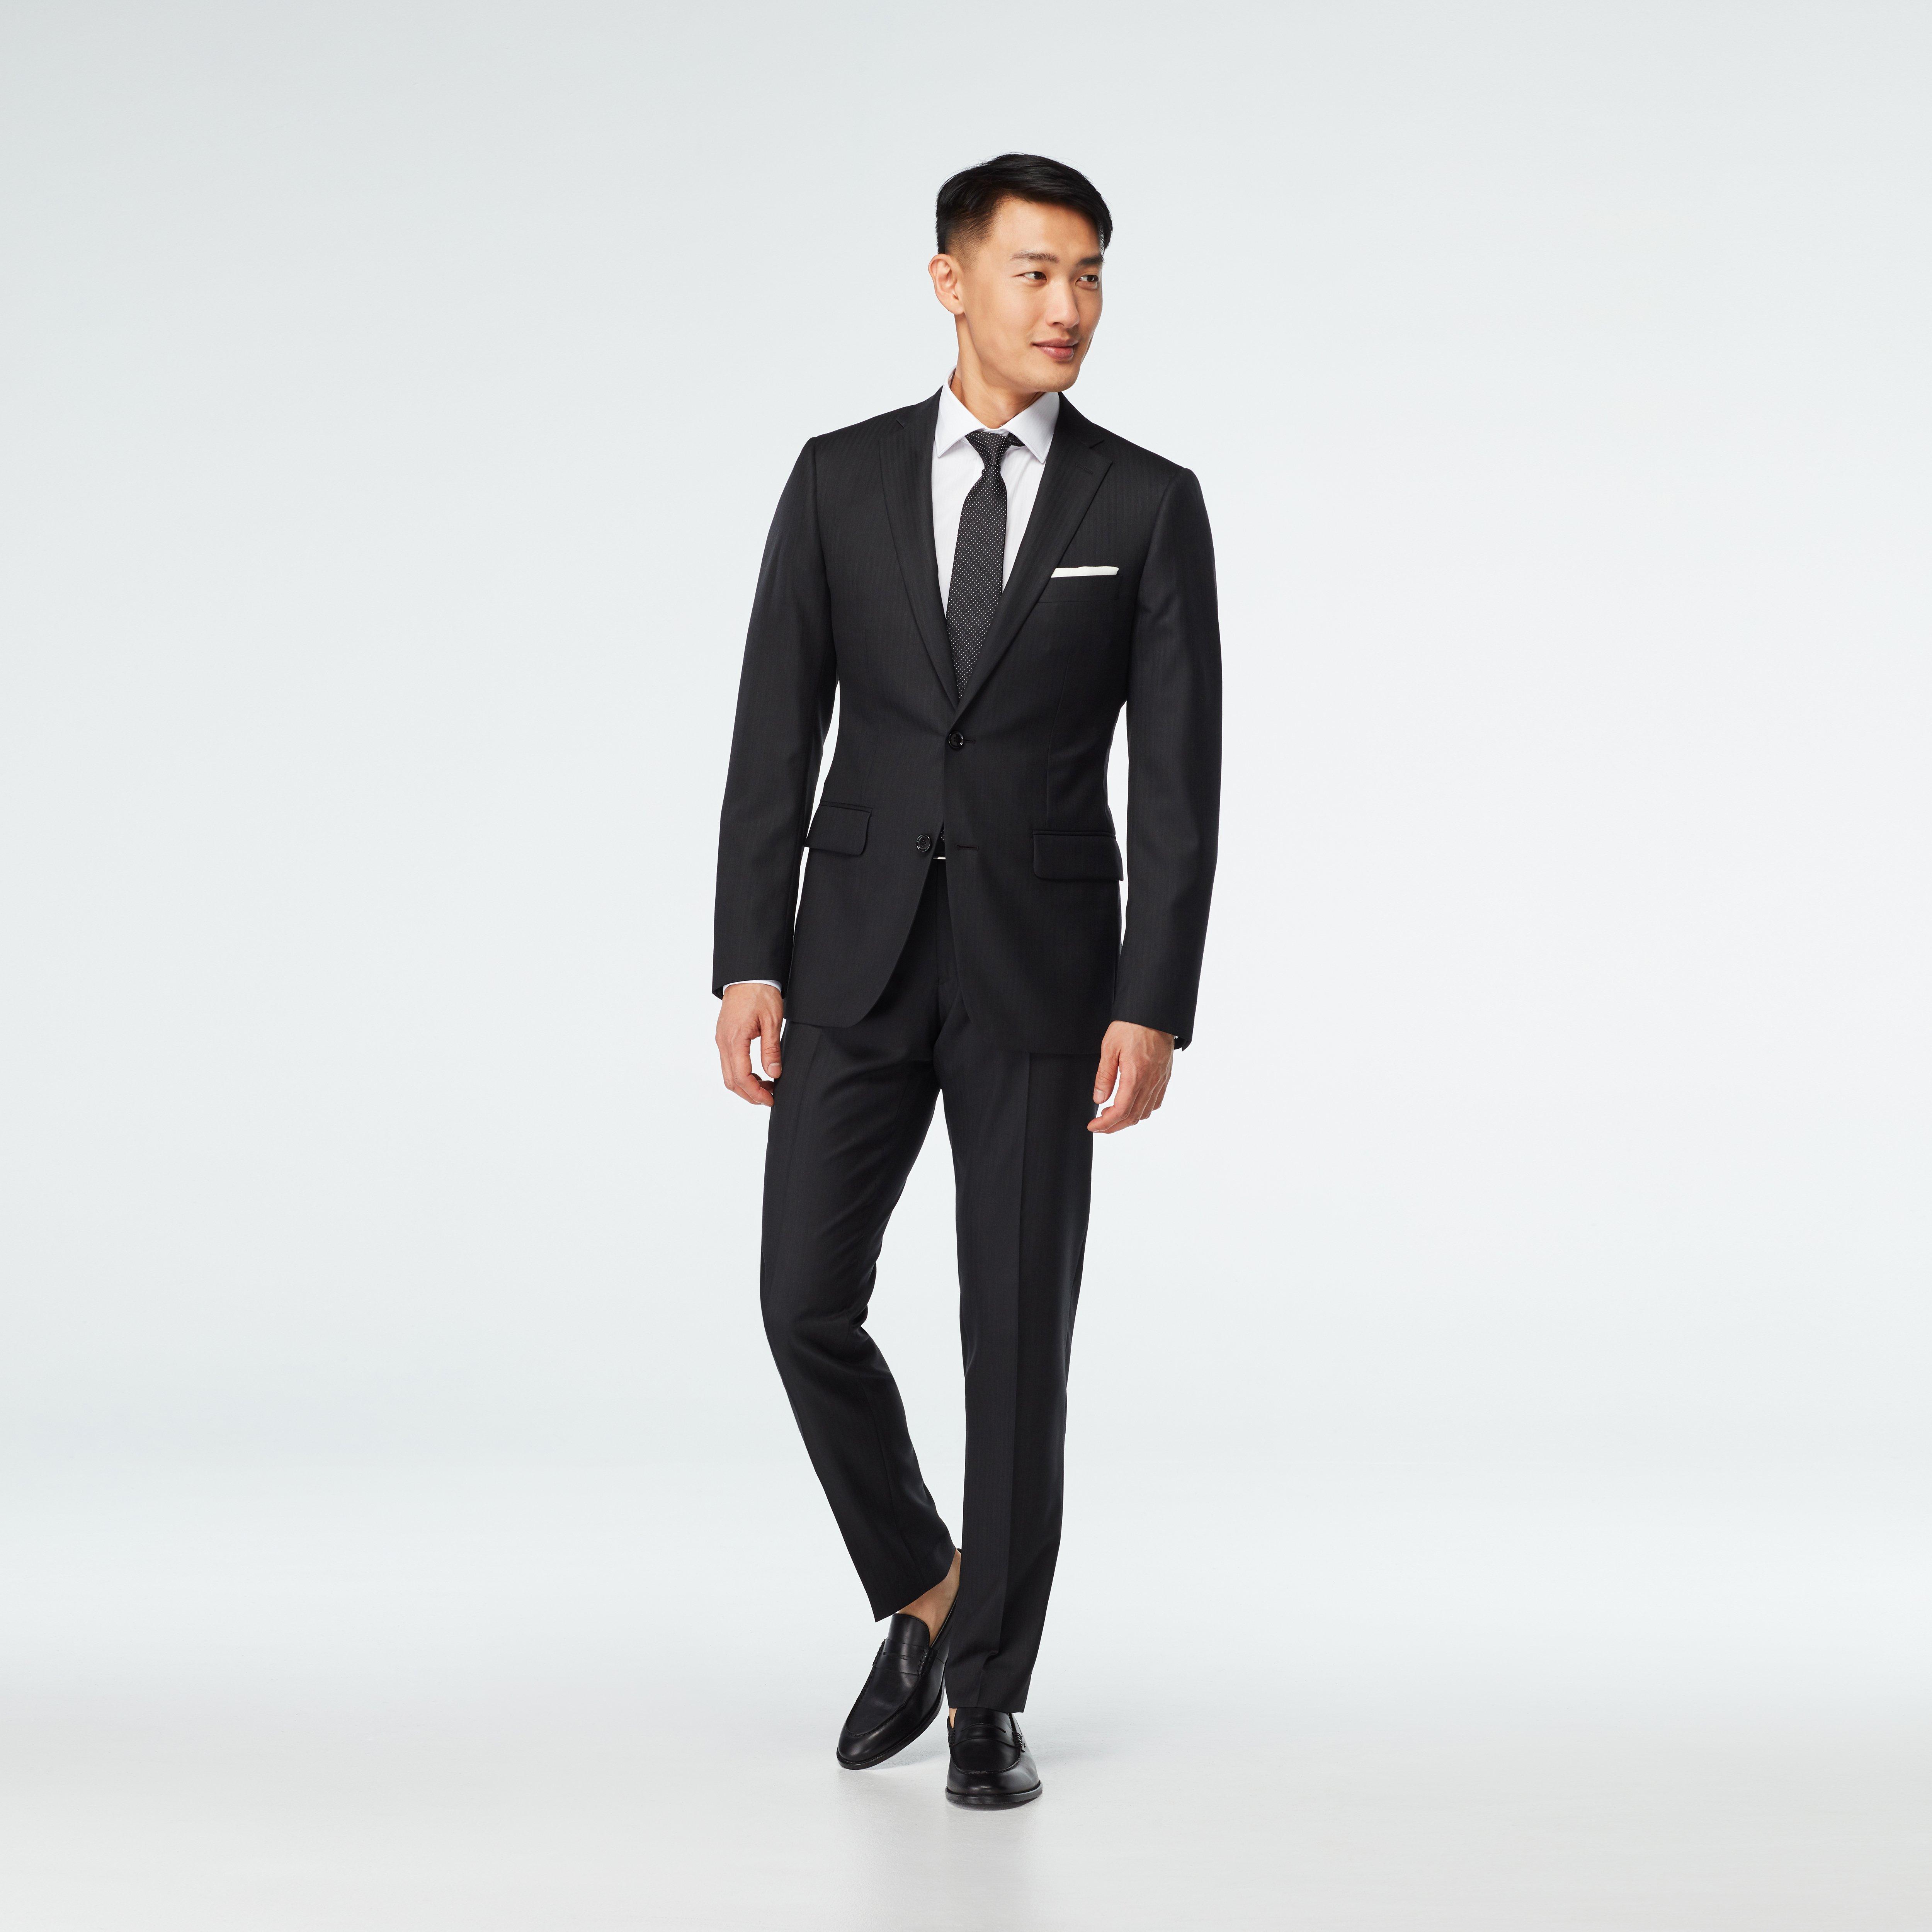 black suit design